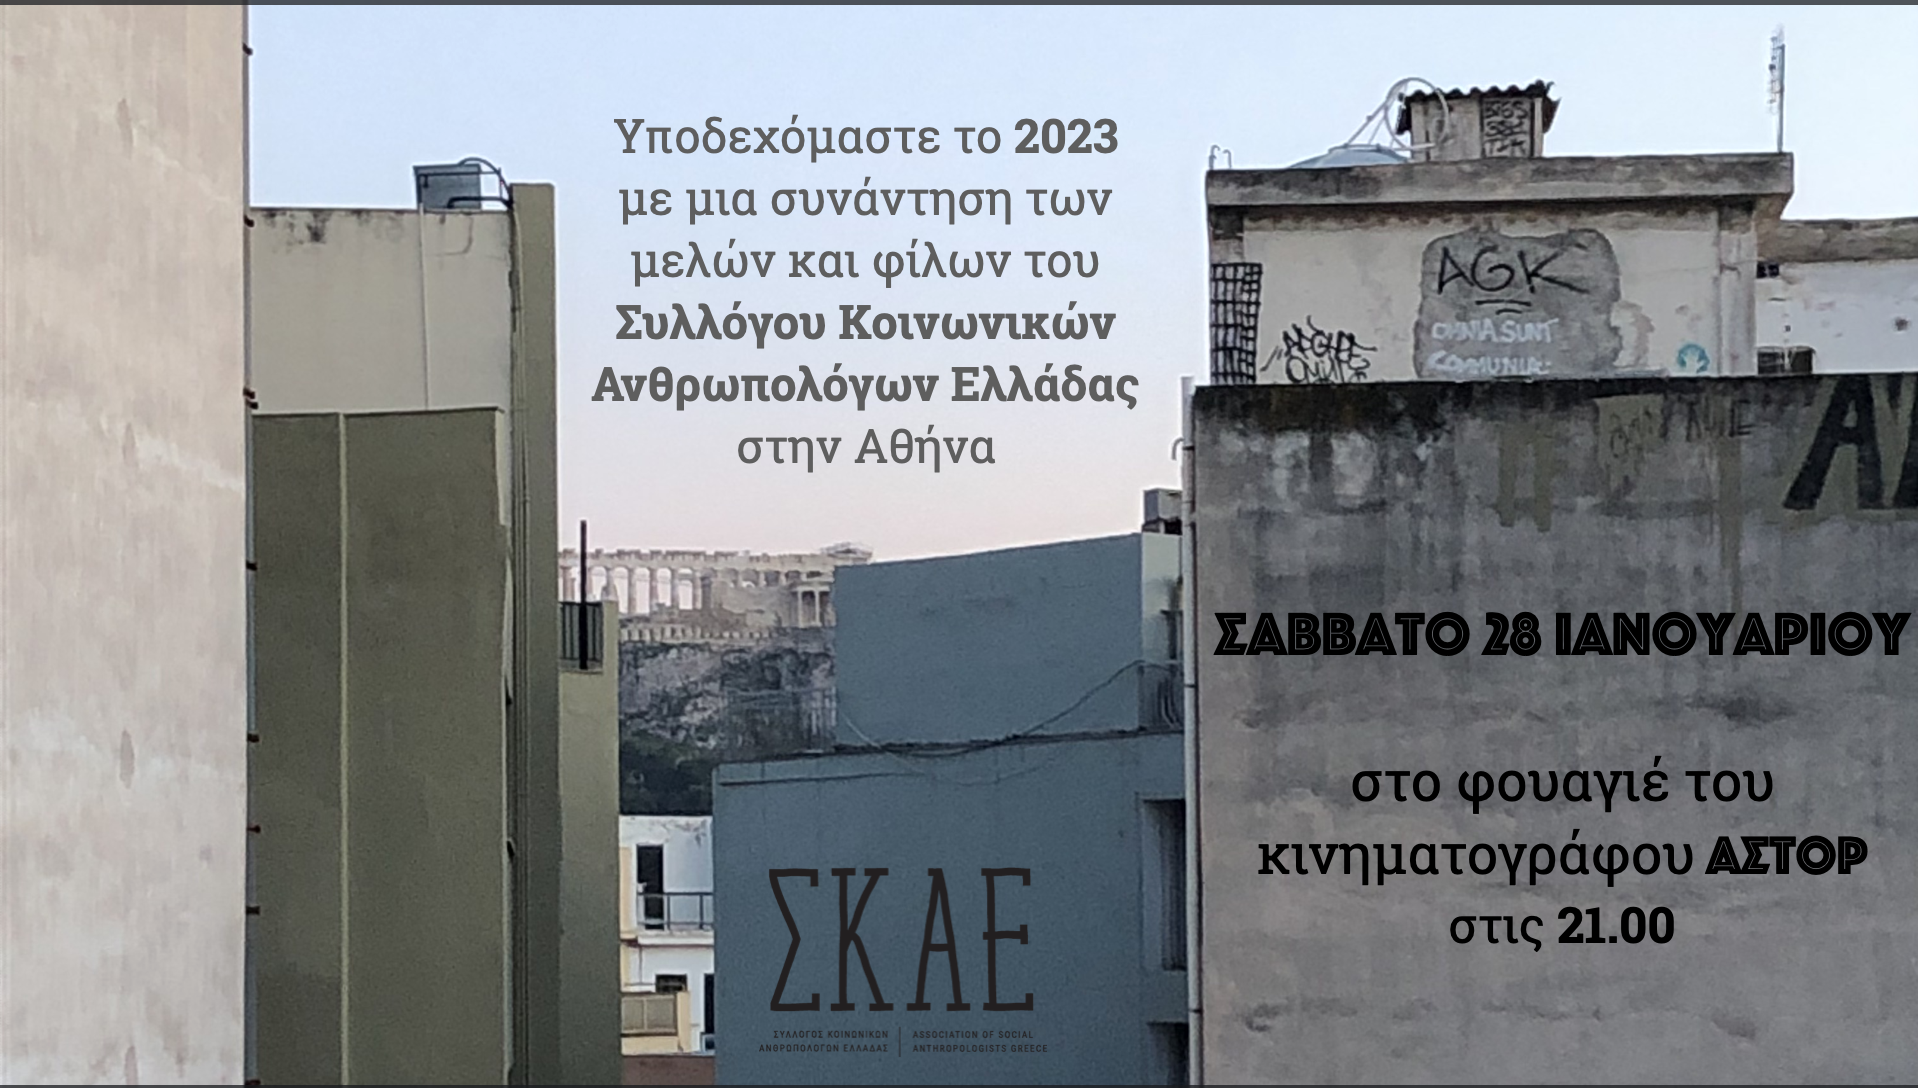 Στην εικόνα φαίνεται η Ακρόπολη ανάμεσα σε διάφορα κτίρια, χαρακτηριστικά της Αθήνας, όπου υπάρχουν και διάφορα κομμάτια γκραφίτι.